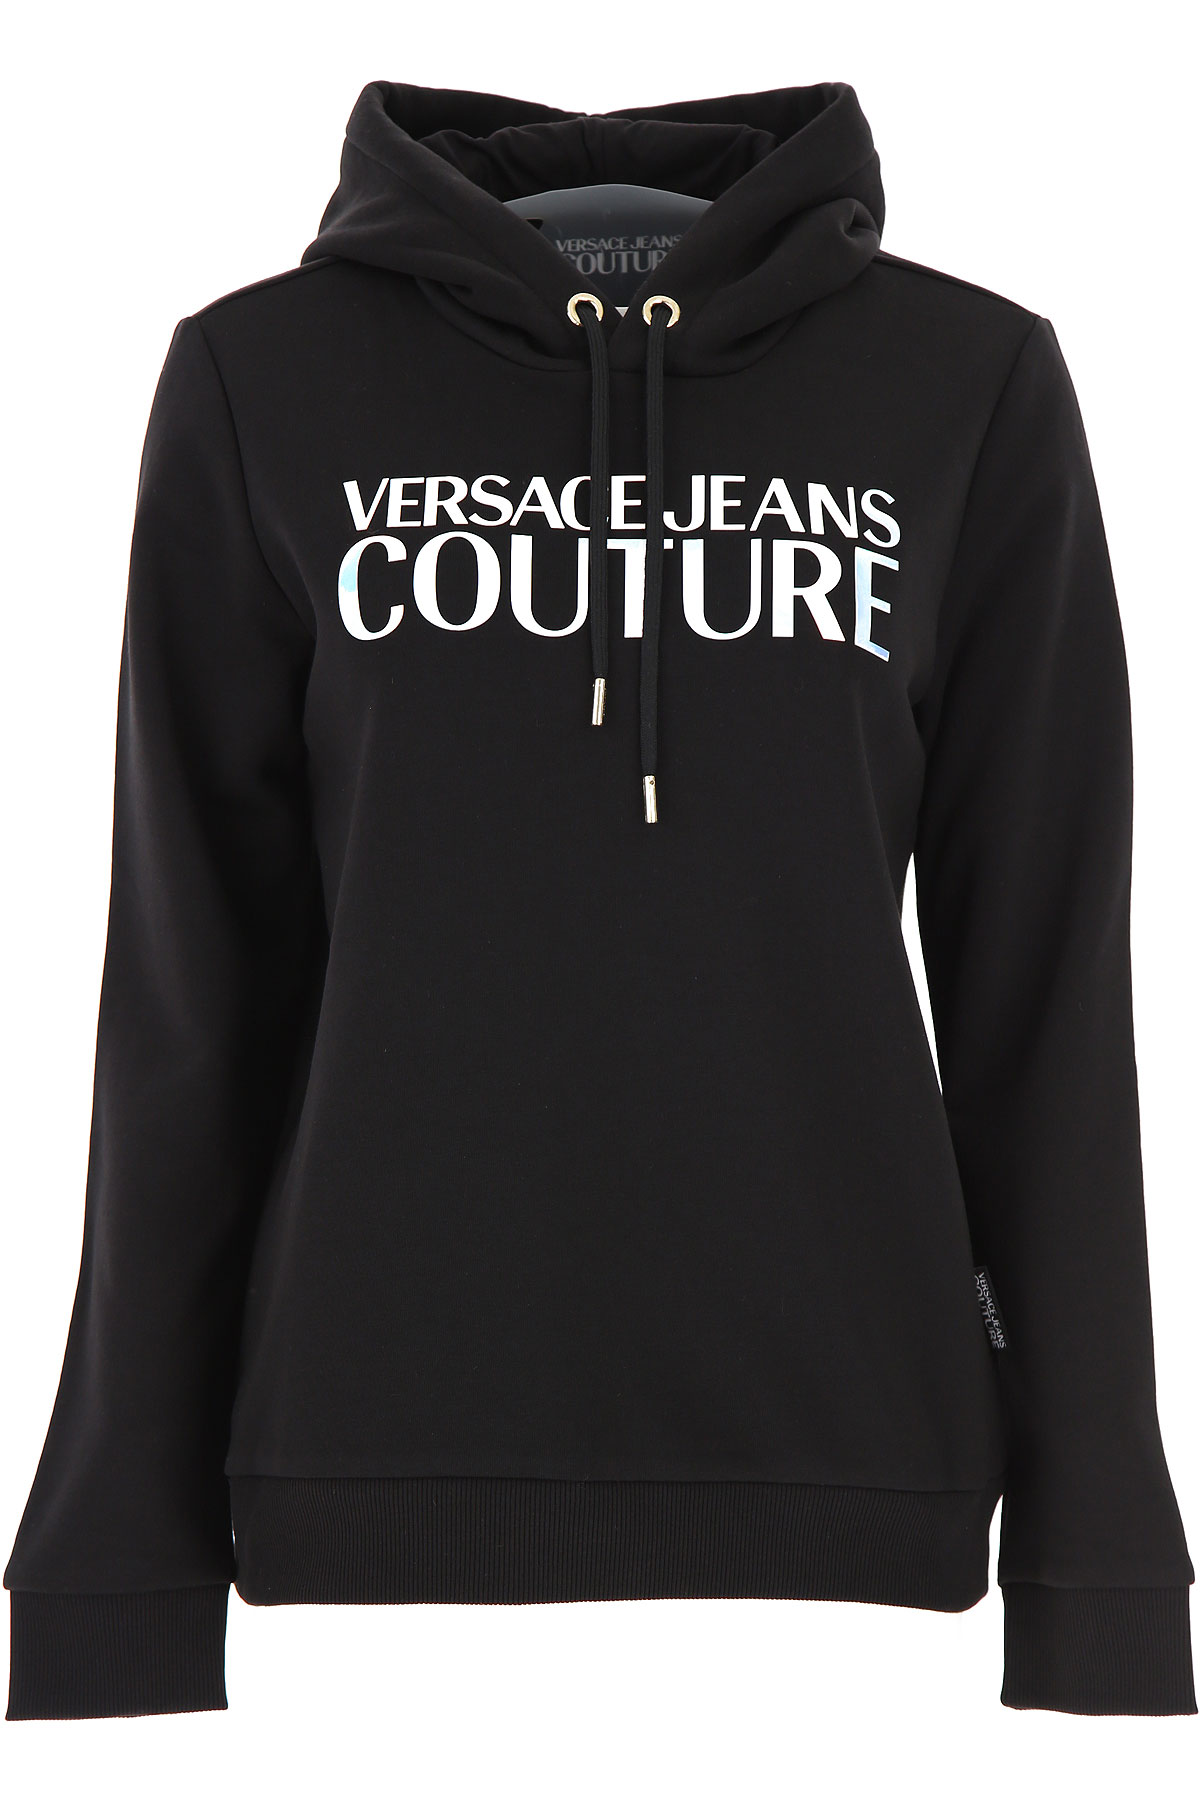 Versace Jeans Couture Sweatshirt für Damen, Kapuzenpulli, Hoodie, Sweats Günstig im Sale, Schwarz, Baumwolle, 2017, 44 M